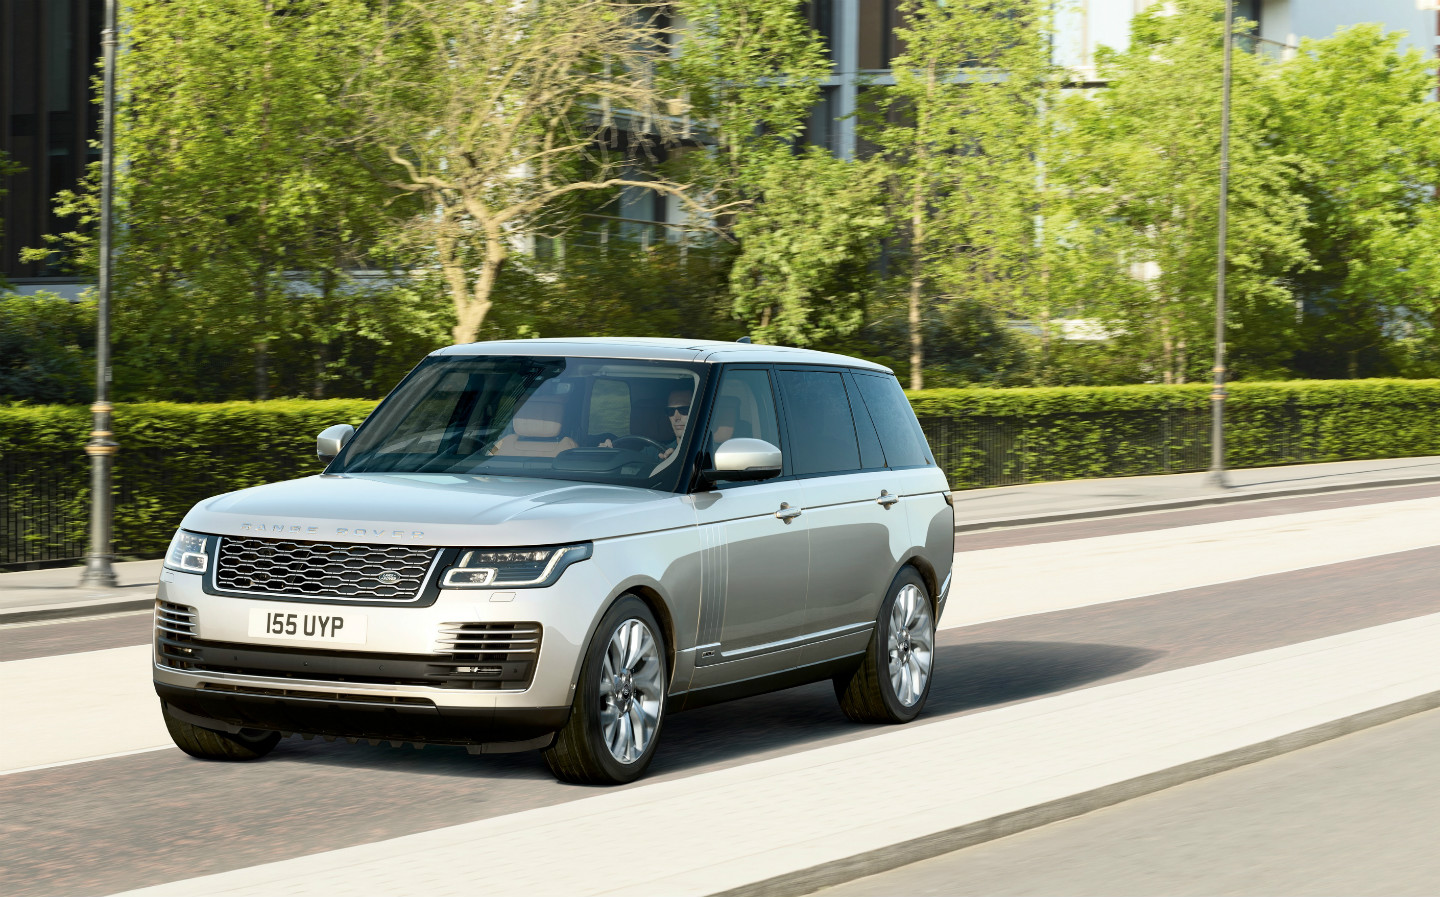 New Range Rover plug-in hybrid promises 101mpg